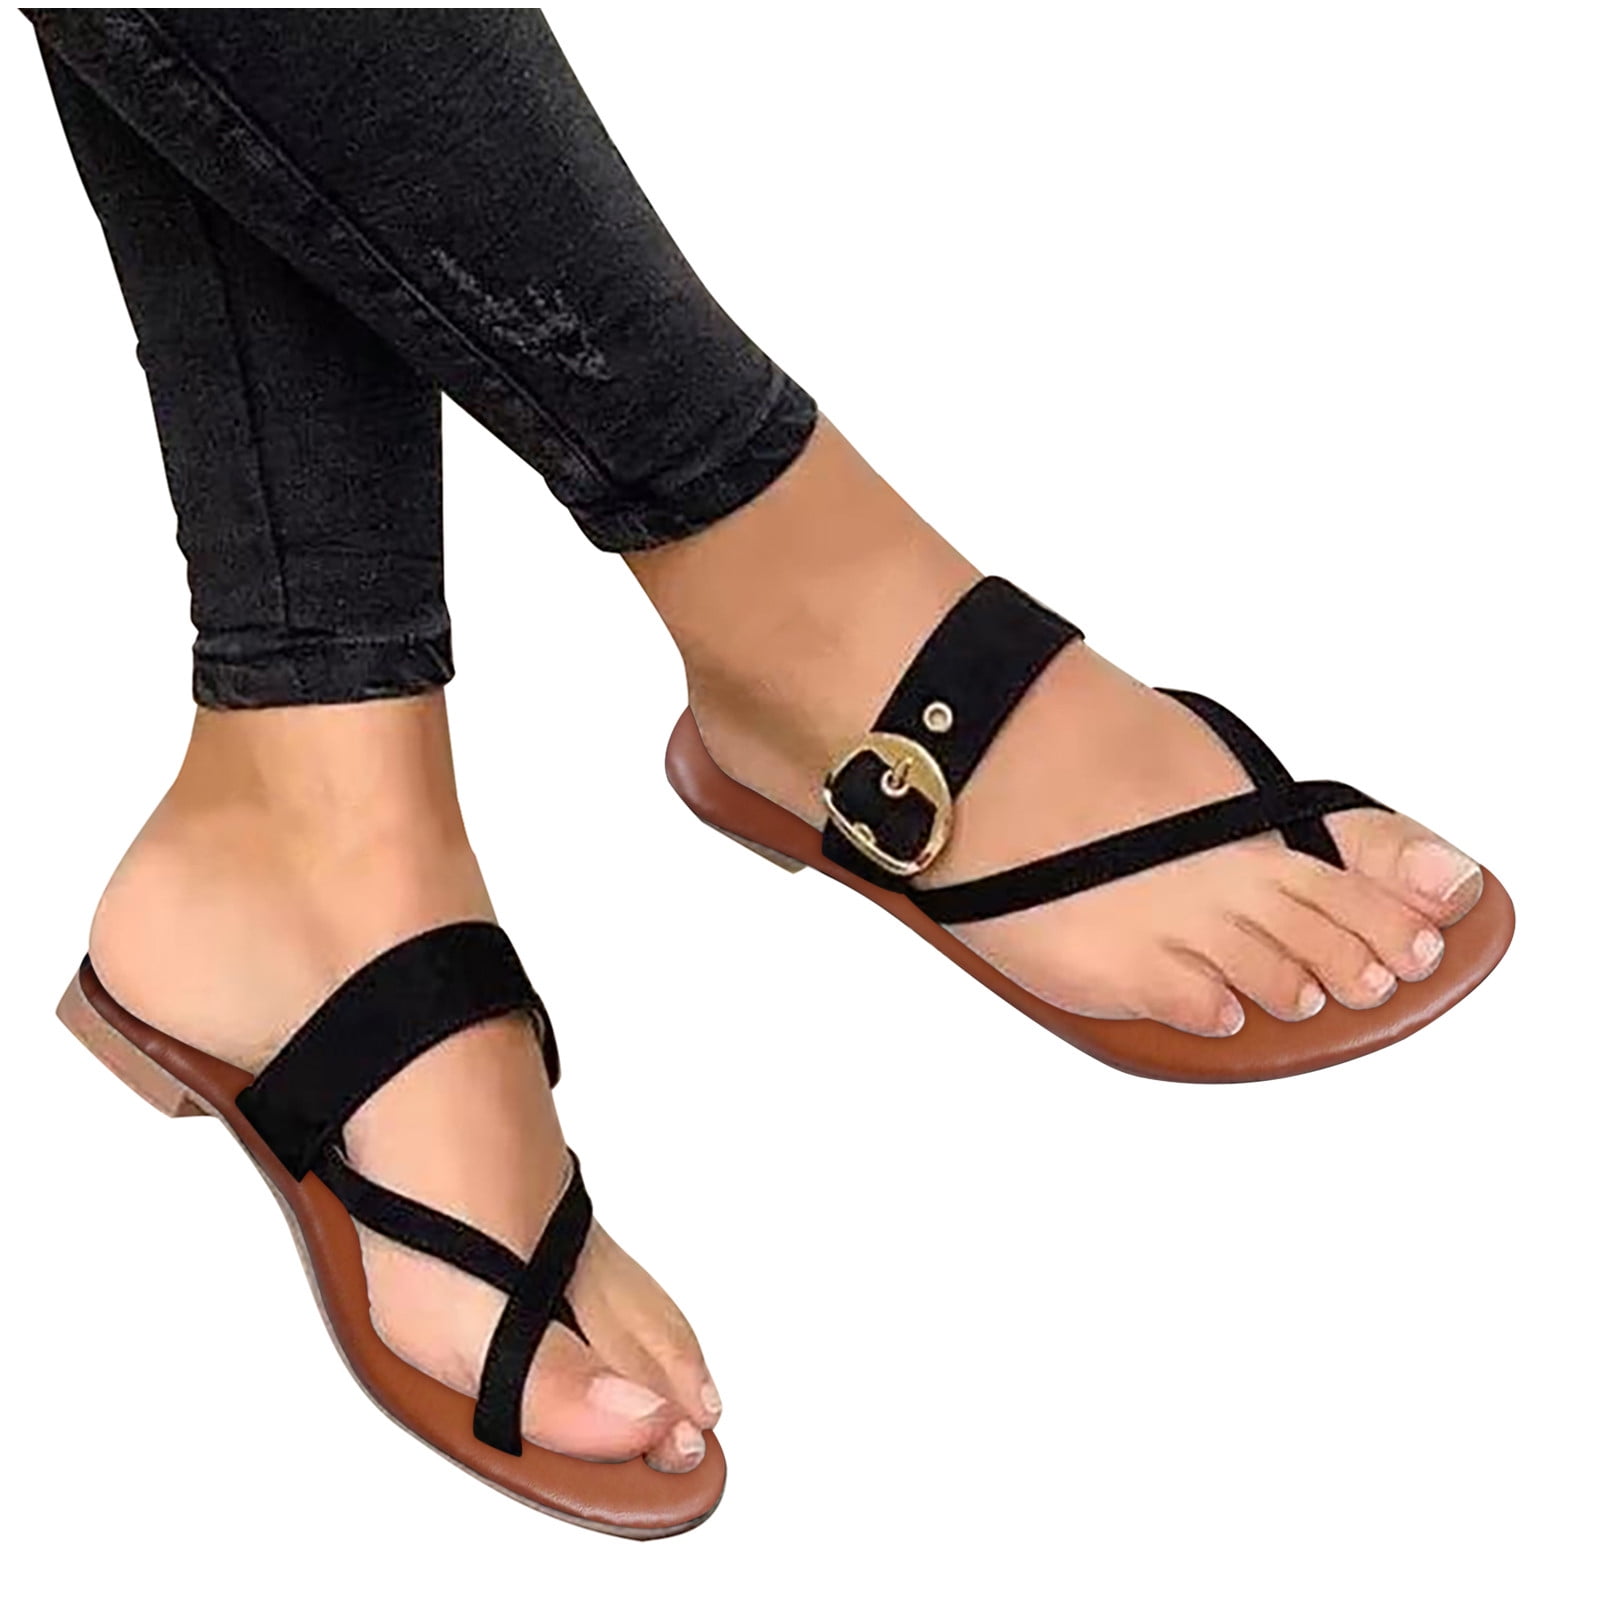 KBKYBUYZ Women Shoes Cross Toe Thread Metal Belt Buckle Flat Female Roman Sandals Slipper Slippers for Women Clearance Walmart.com